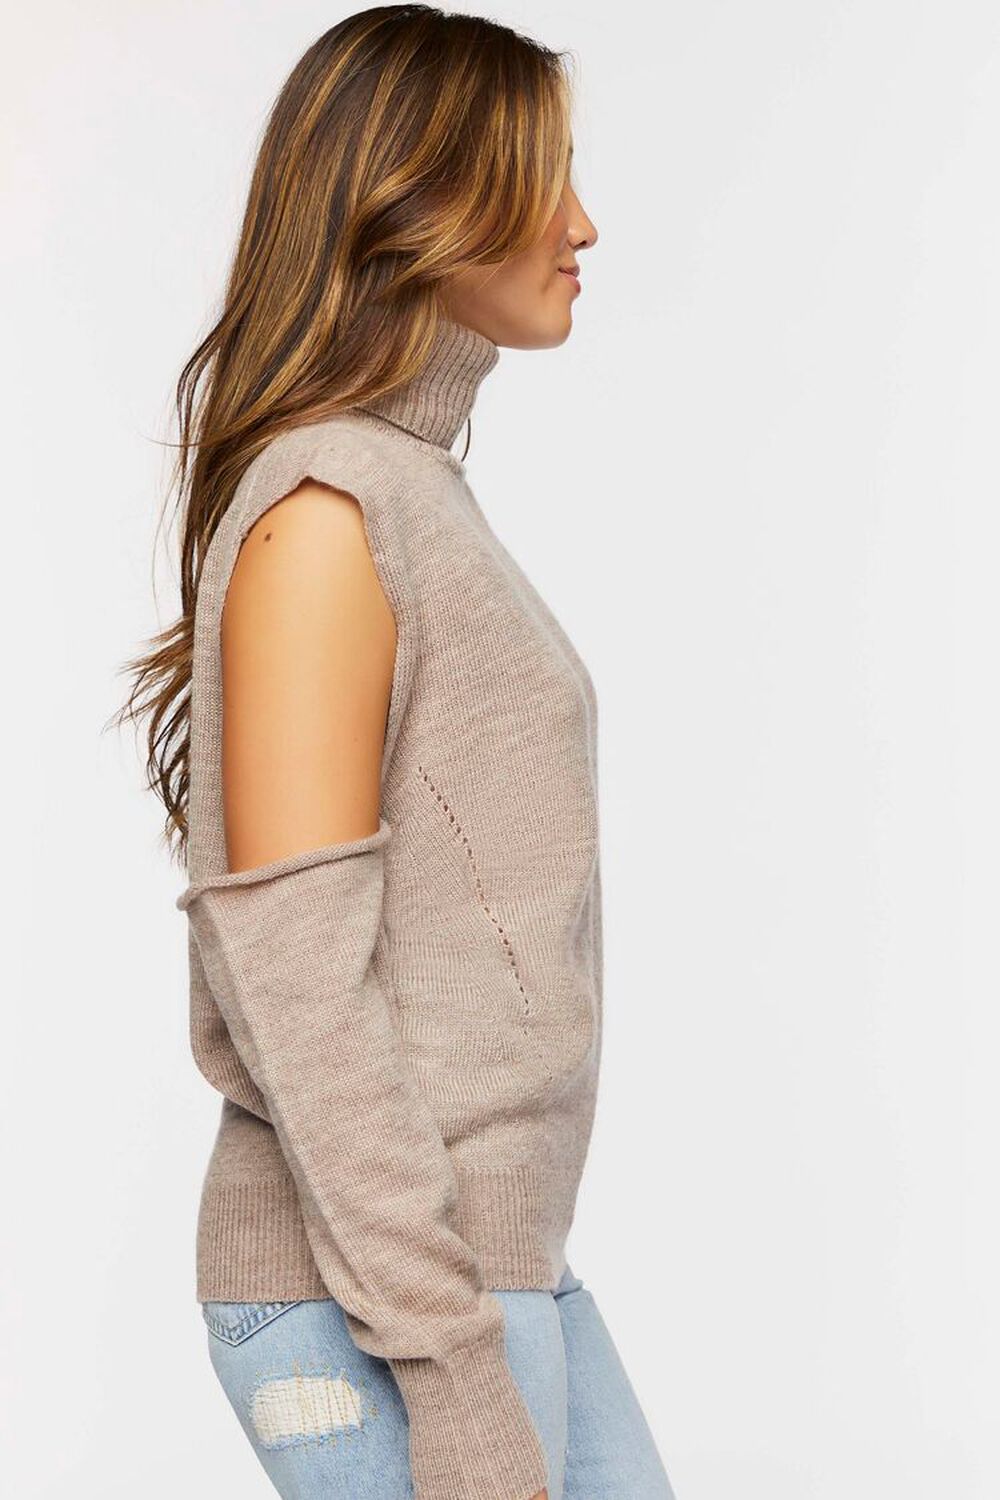 BEIGE Convertible Open-Shoulder Sweater, image 2